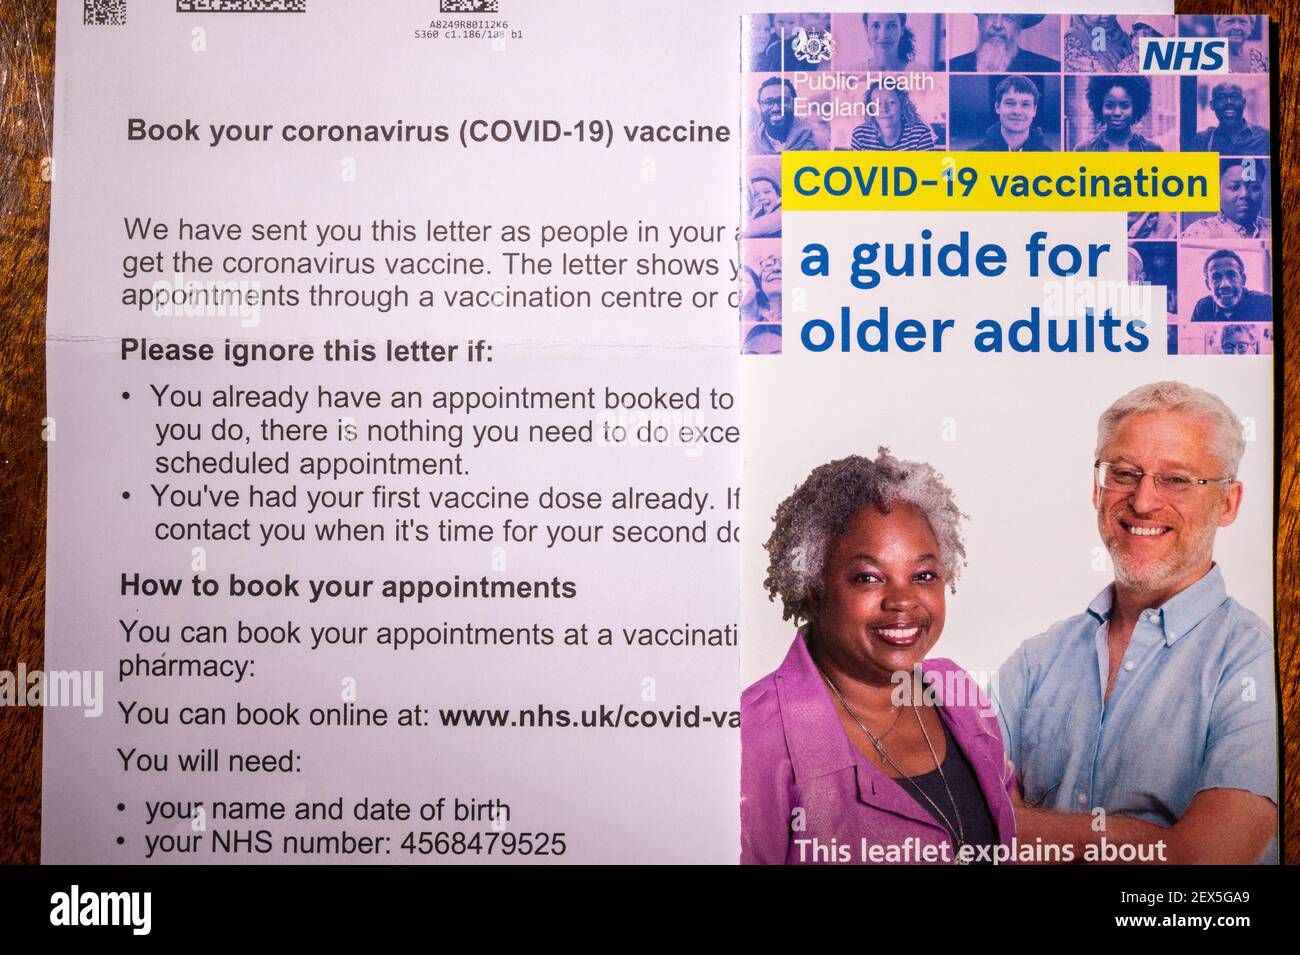 Carta de invitación del NHS para reservar una vacuna contra el coronavirus para una persona mayor de 60 años de edad con folleto de orientación. Retocado para eliminar información personal. Foto de stock